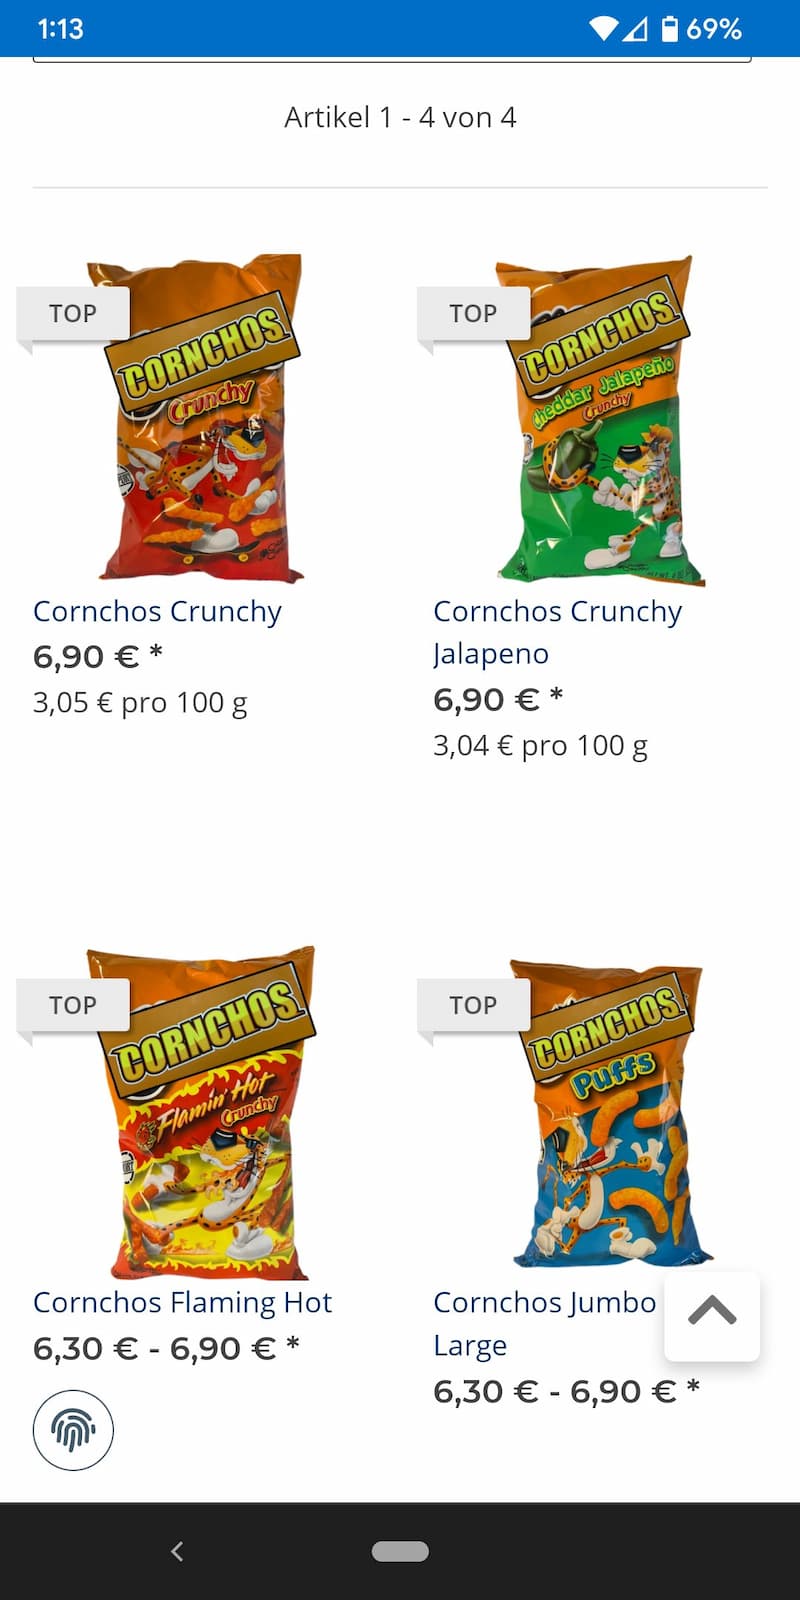 Cheetos son ilegales en Alemania